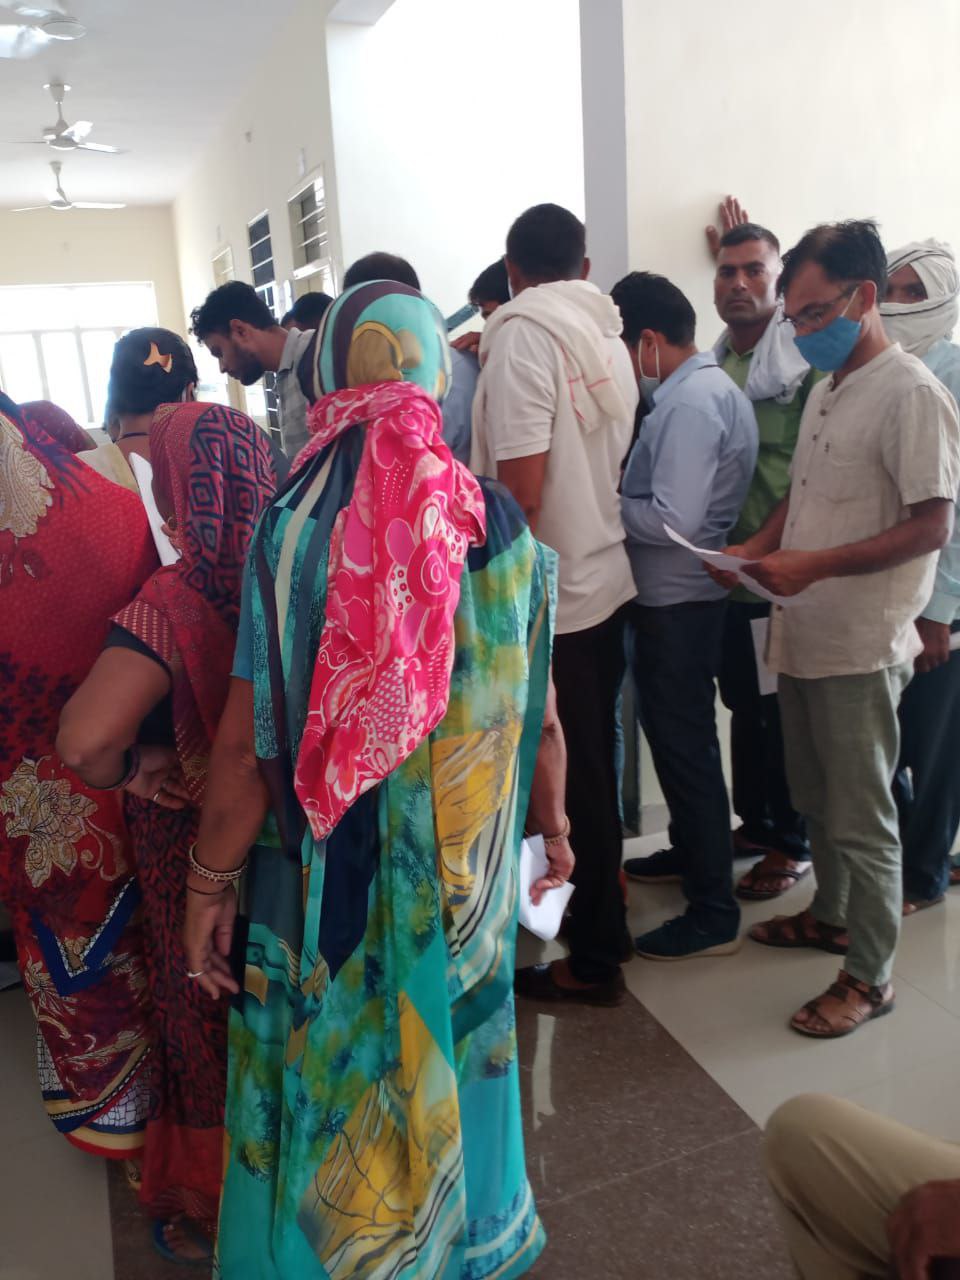 शाहपुरा ब्लॉक के दो गांवों में 22 दिन बाद हुआ वैक्सीनेशन, उमड़े लोग